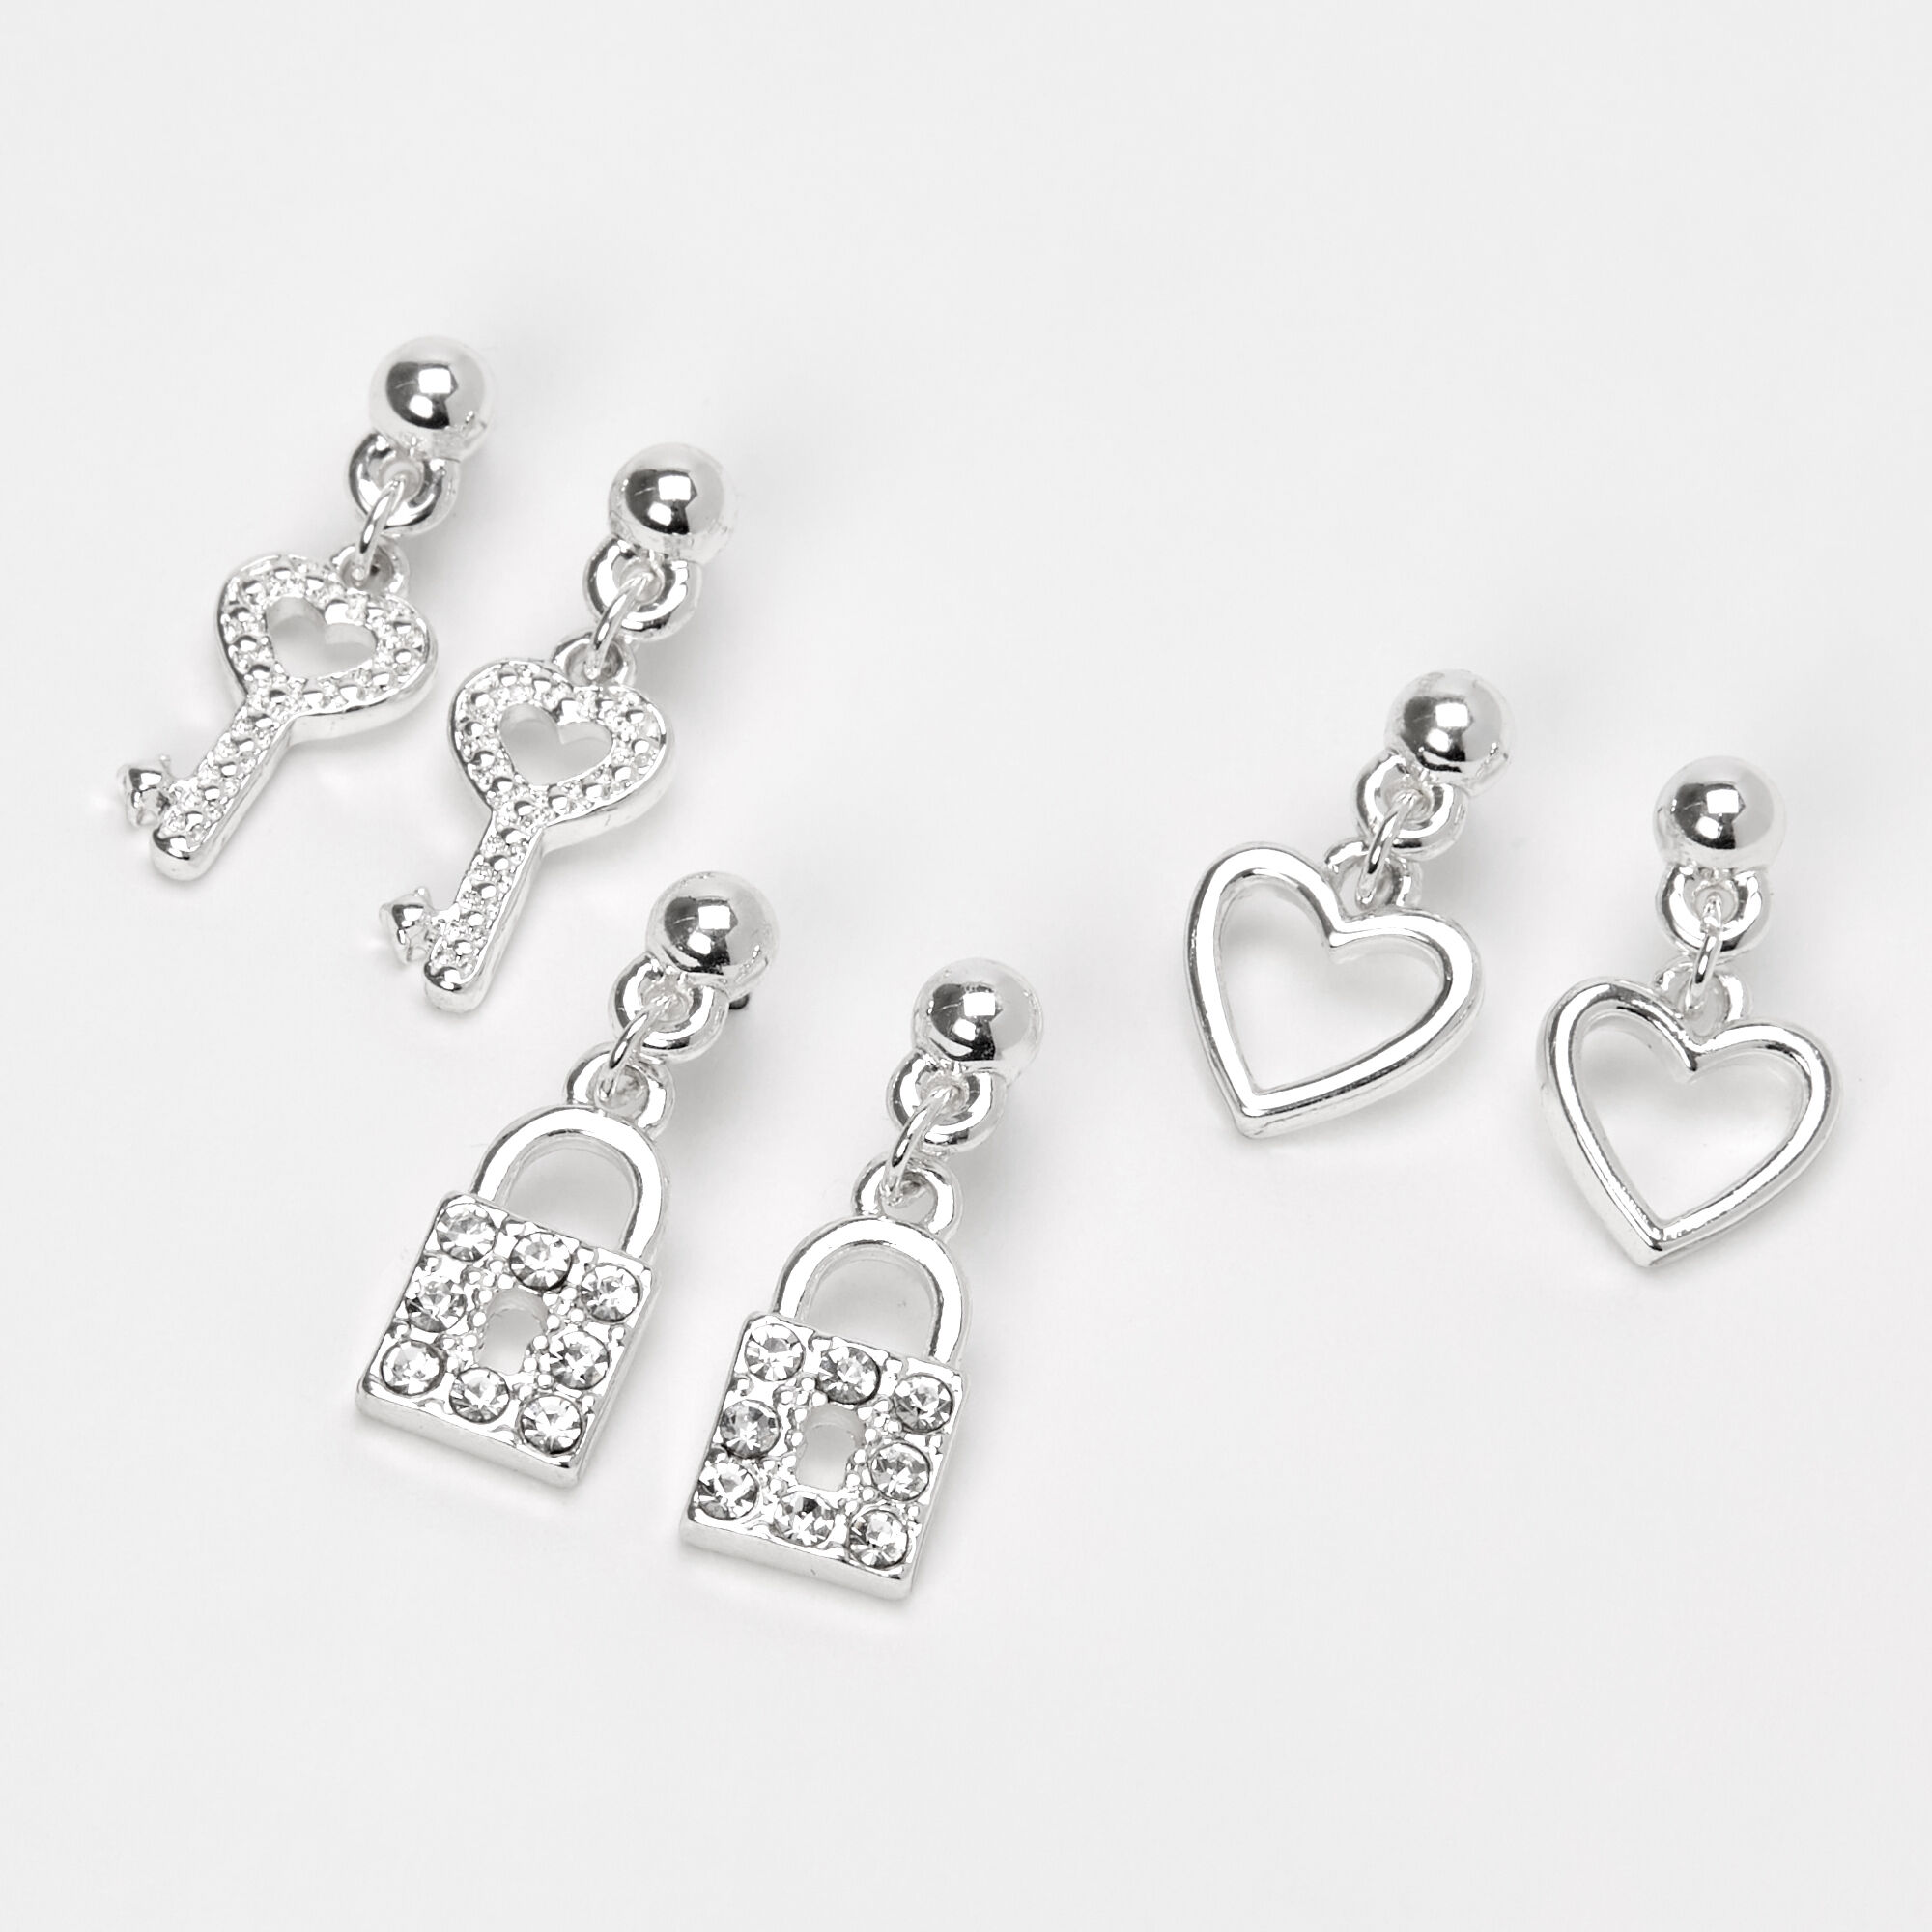 Sterling Silver Lock & Key Earrings - JH Breakell and Co.